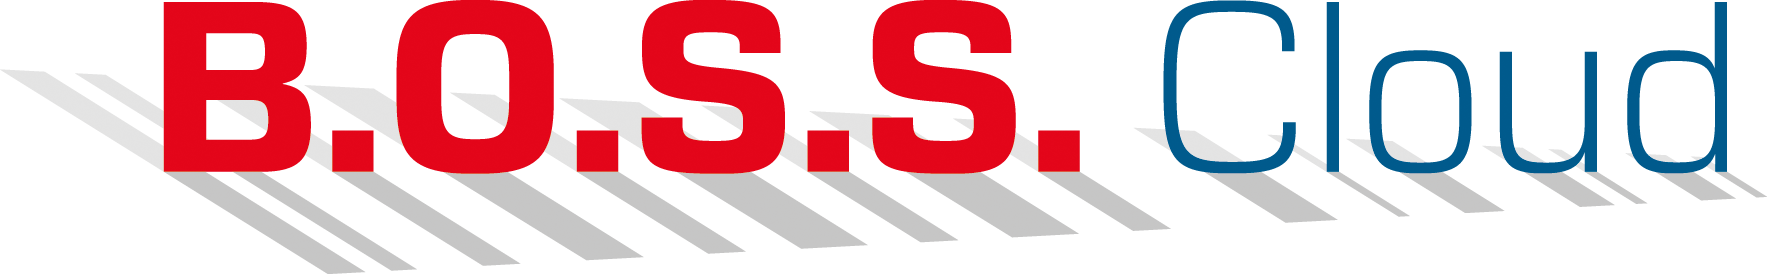 Logo B.O.S.S. Cloud